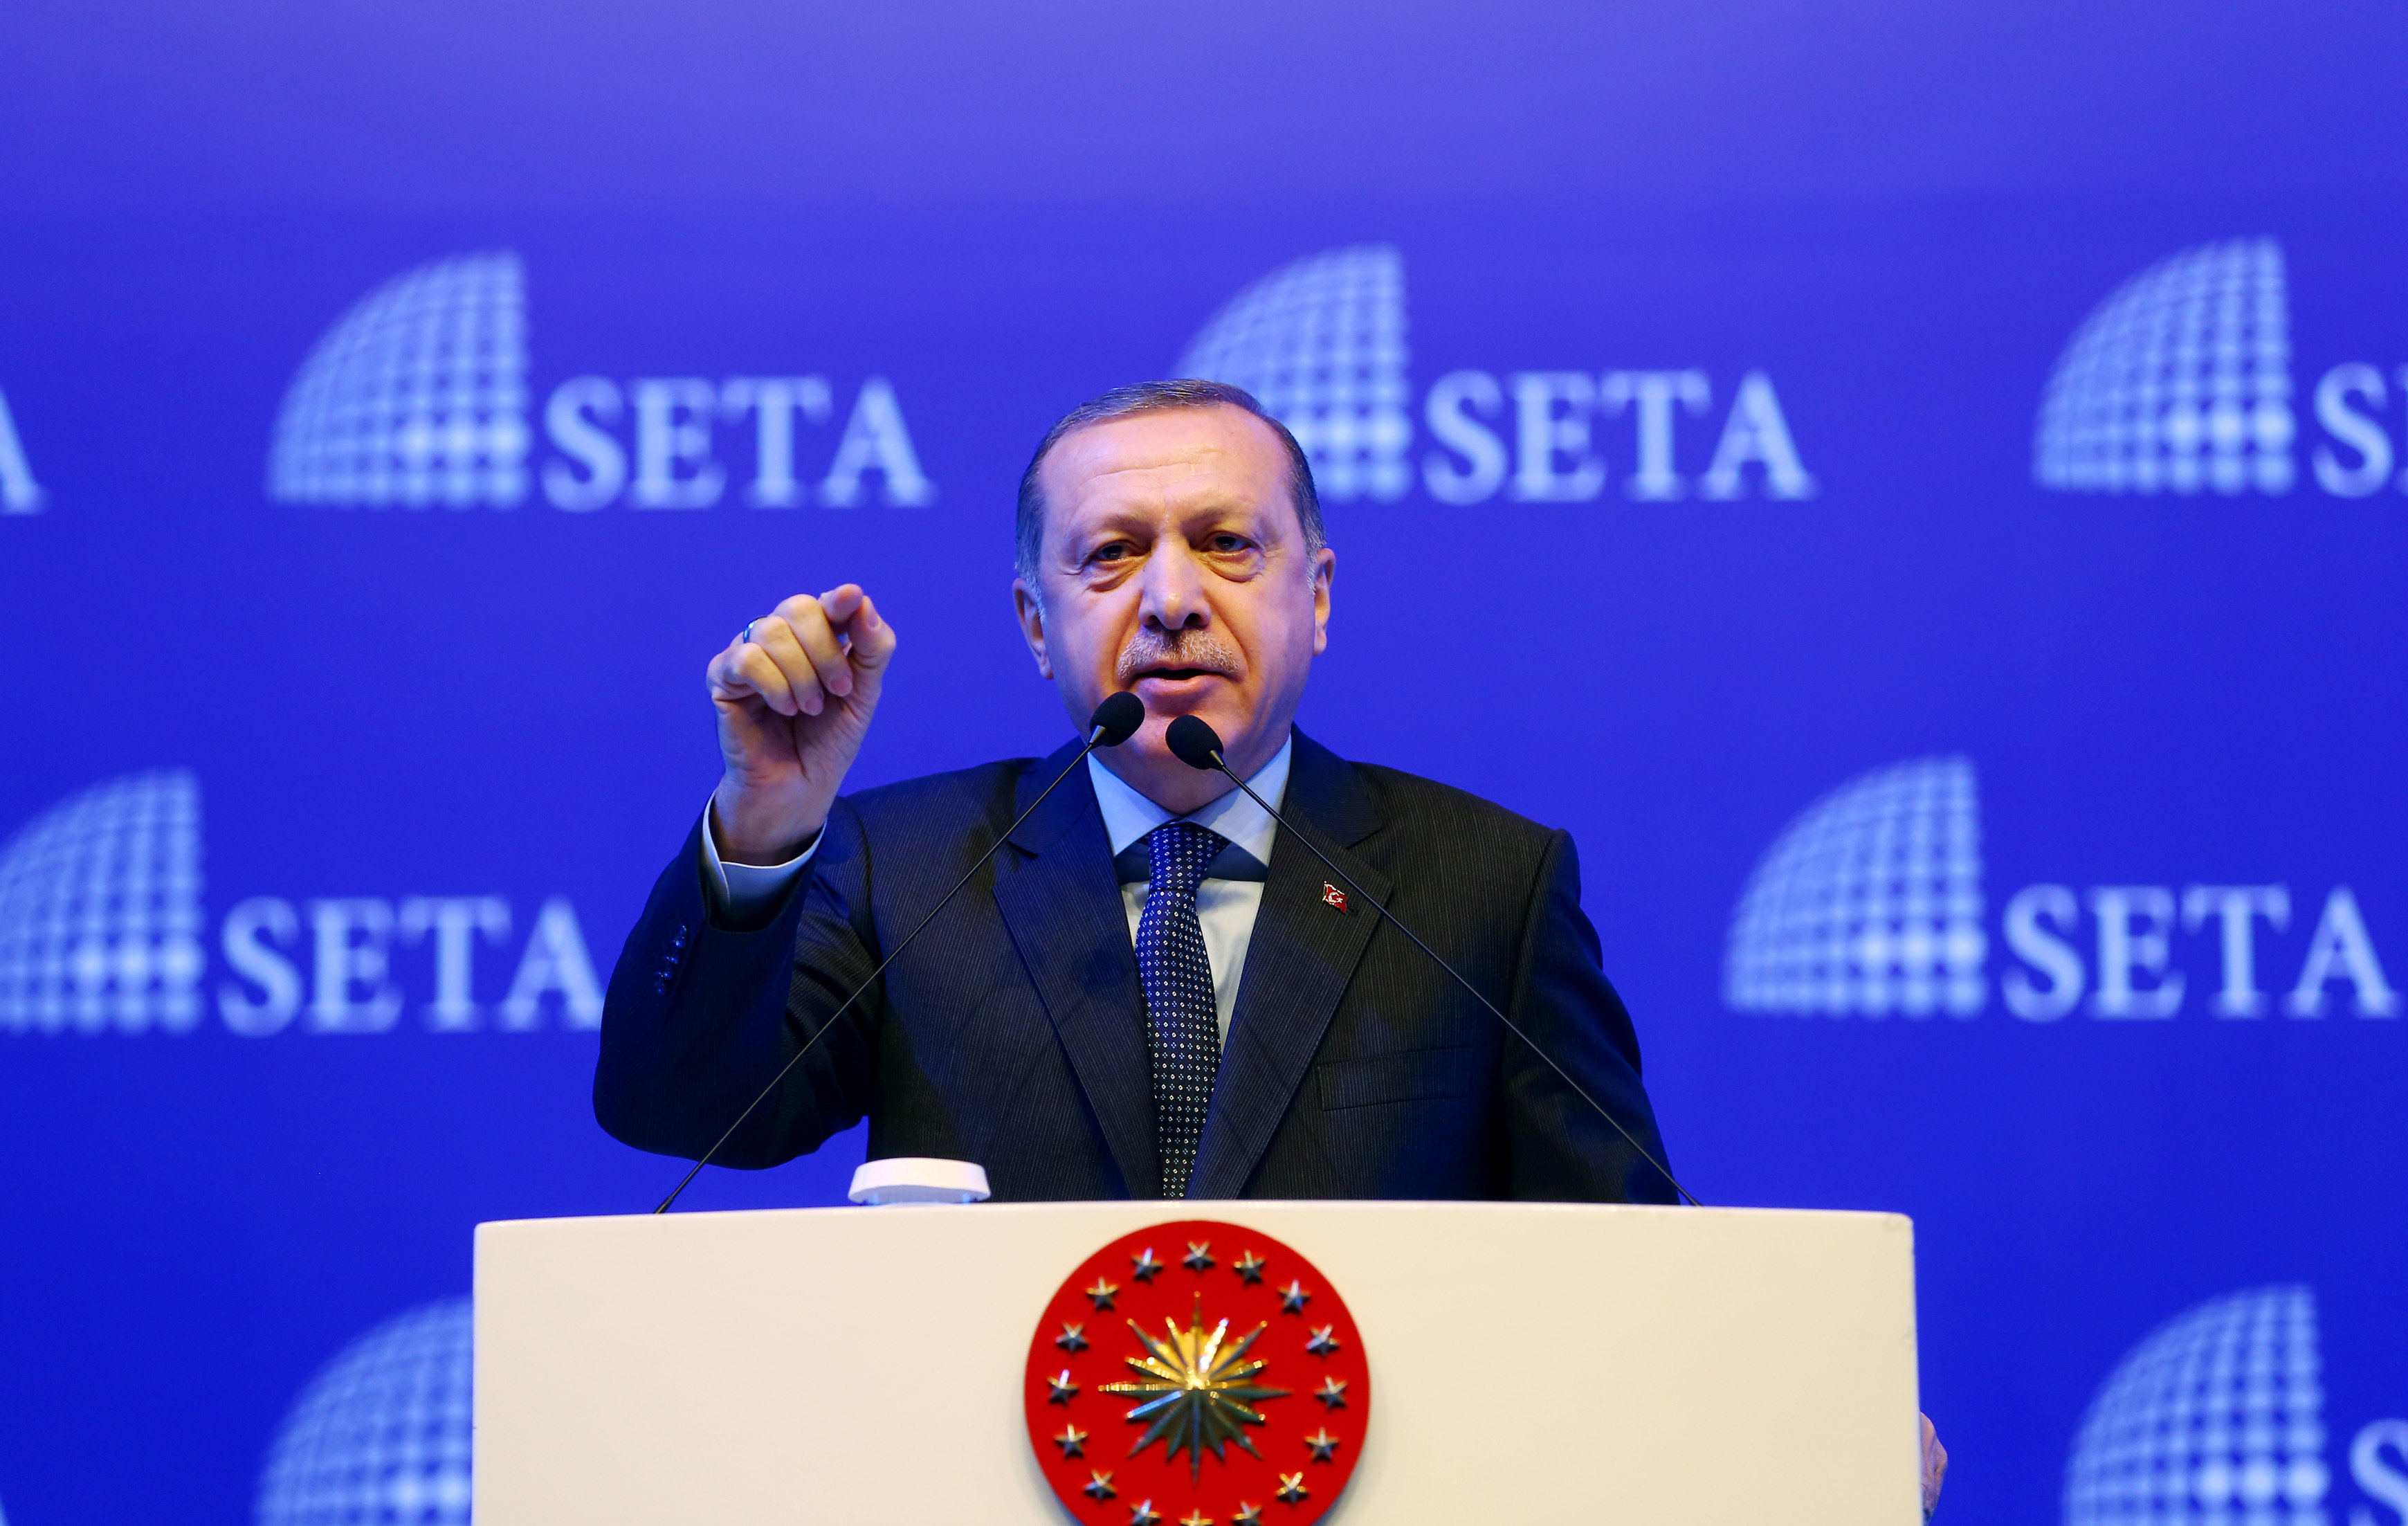 El canciller turco viajaba a los Países Bajos en busca de apoyo al referendo sobre la reforma constitucional que hará de Turquía un sistema presidencialista dejando atrás la actual república parlamentaria.